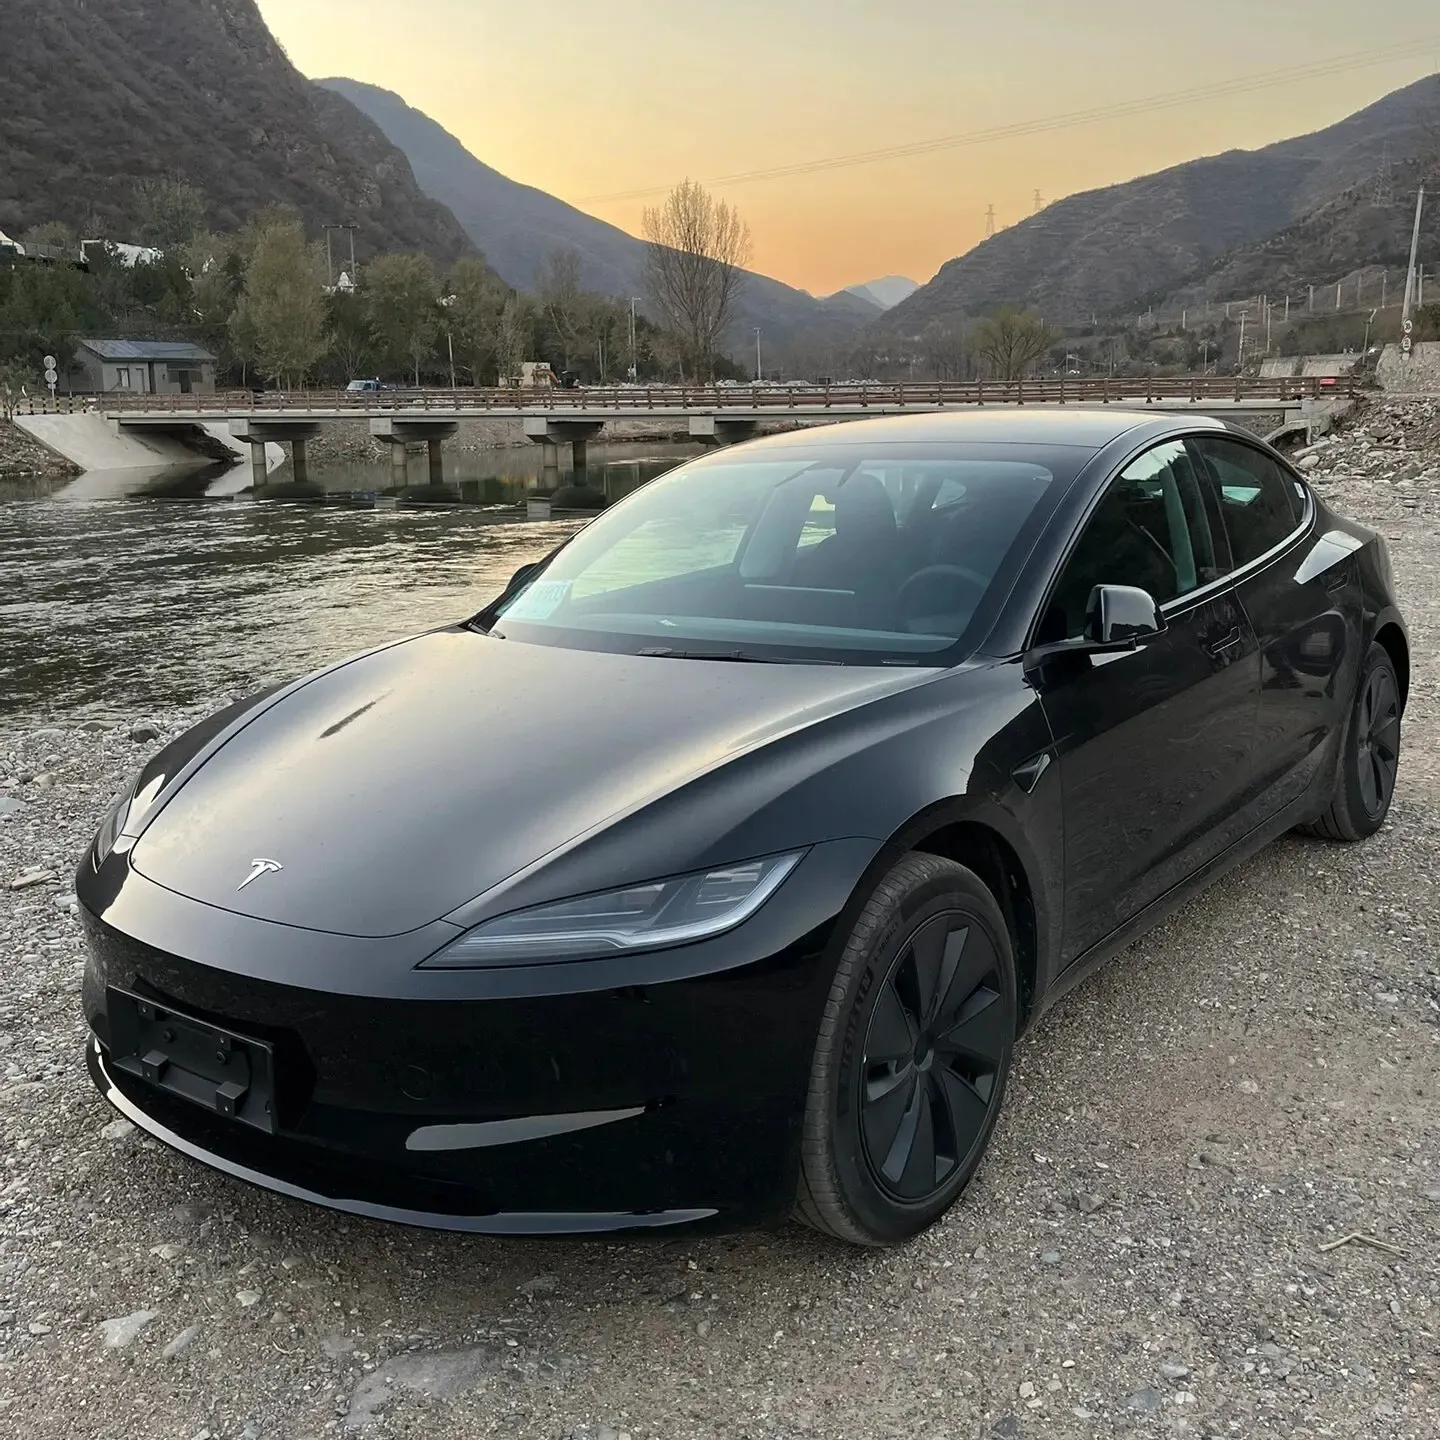 Coche eléctrico puro Tesla Modelo 3 nuevo vehículo de energía tracción total y motores duales EV car